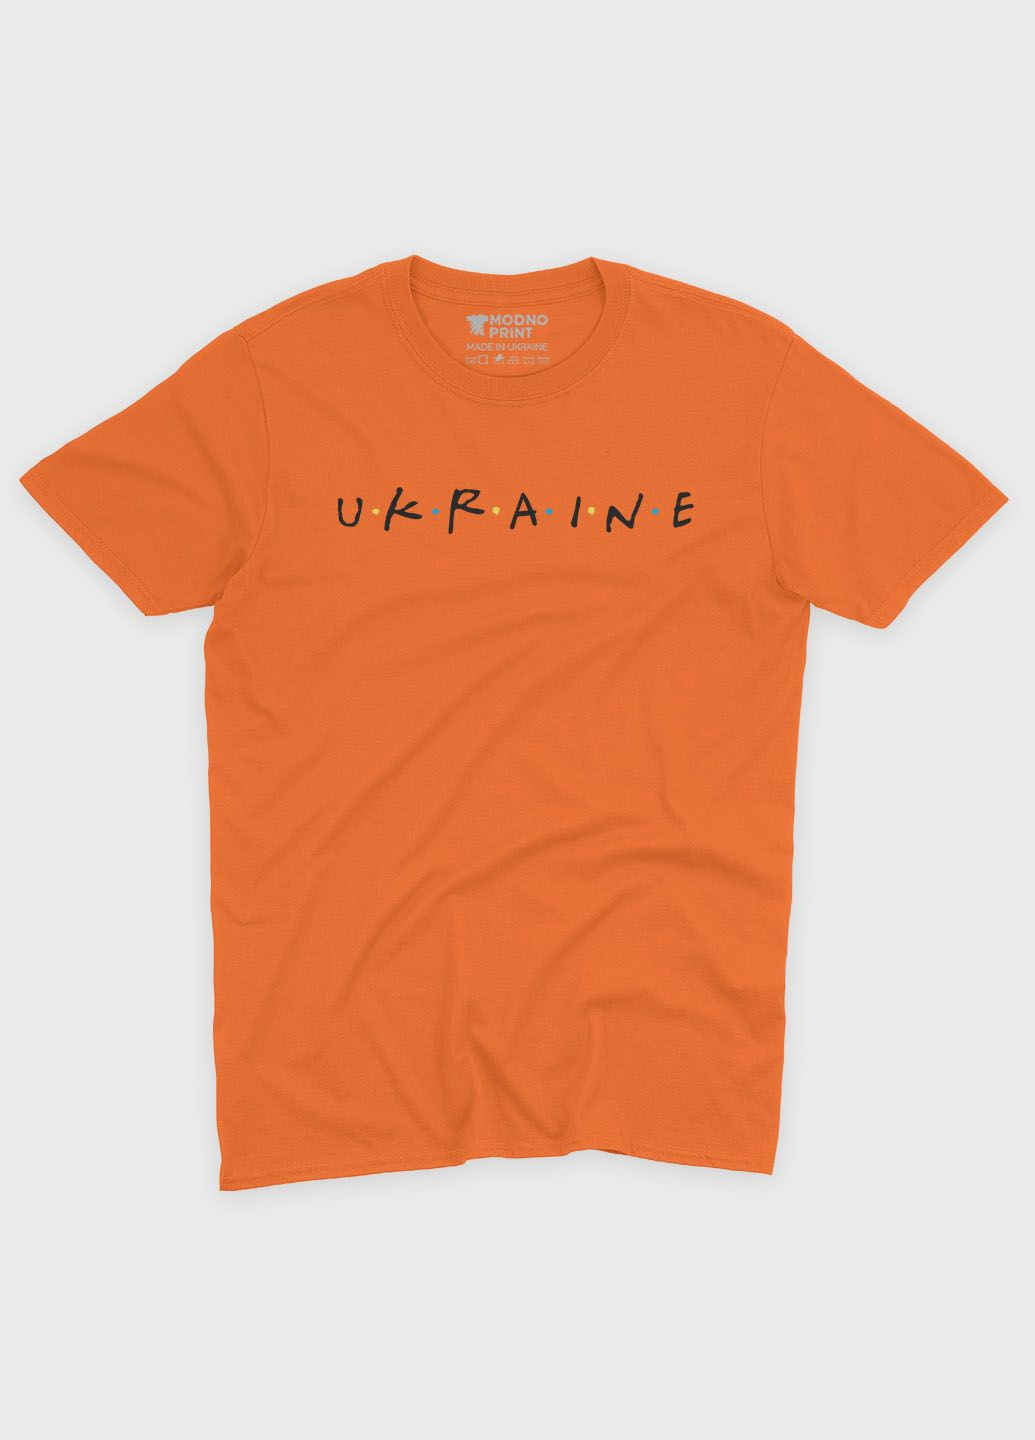 Оранжевая мужская футболка с патриотическим принтом ukraine (ts001-4-ora-005-1-089) Modno